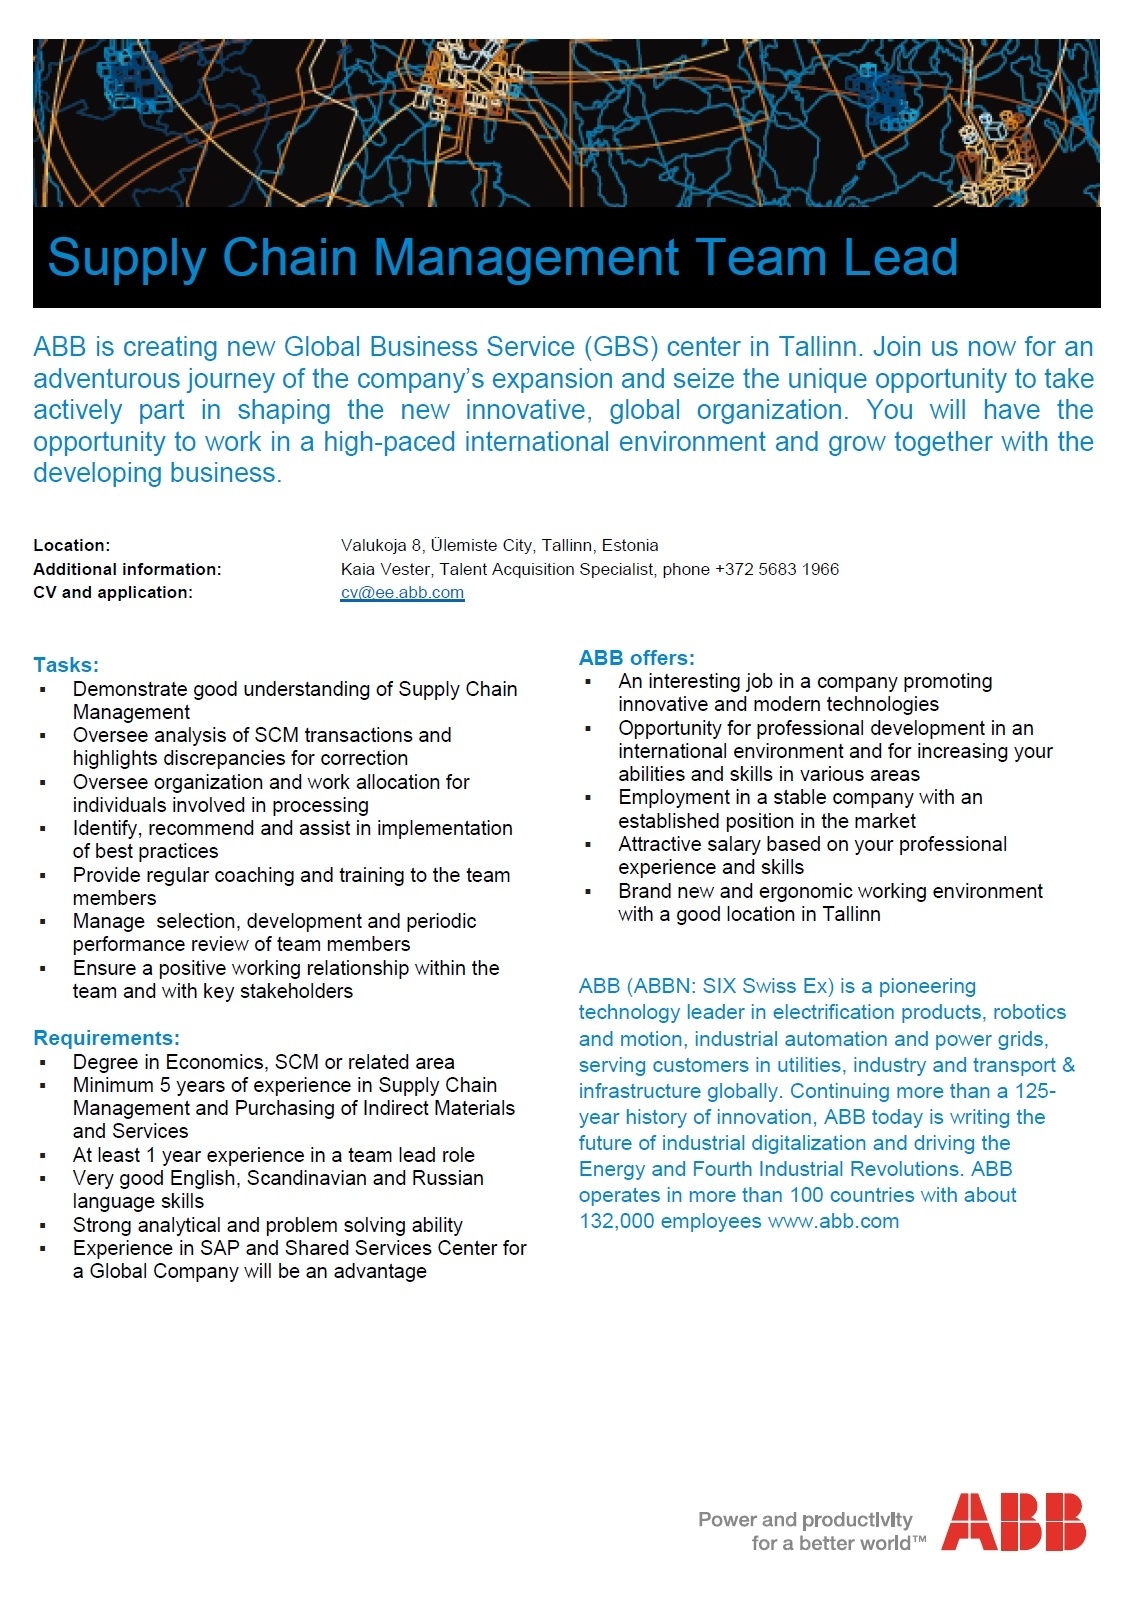 ABB AS Supply Chain Management Team Lead